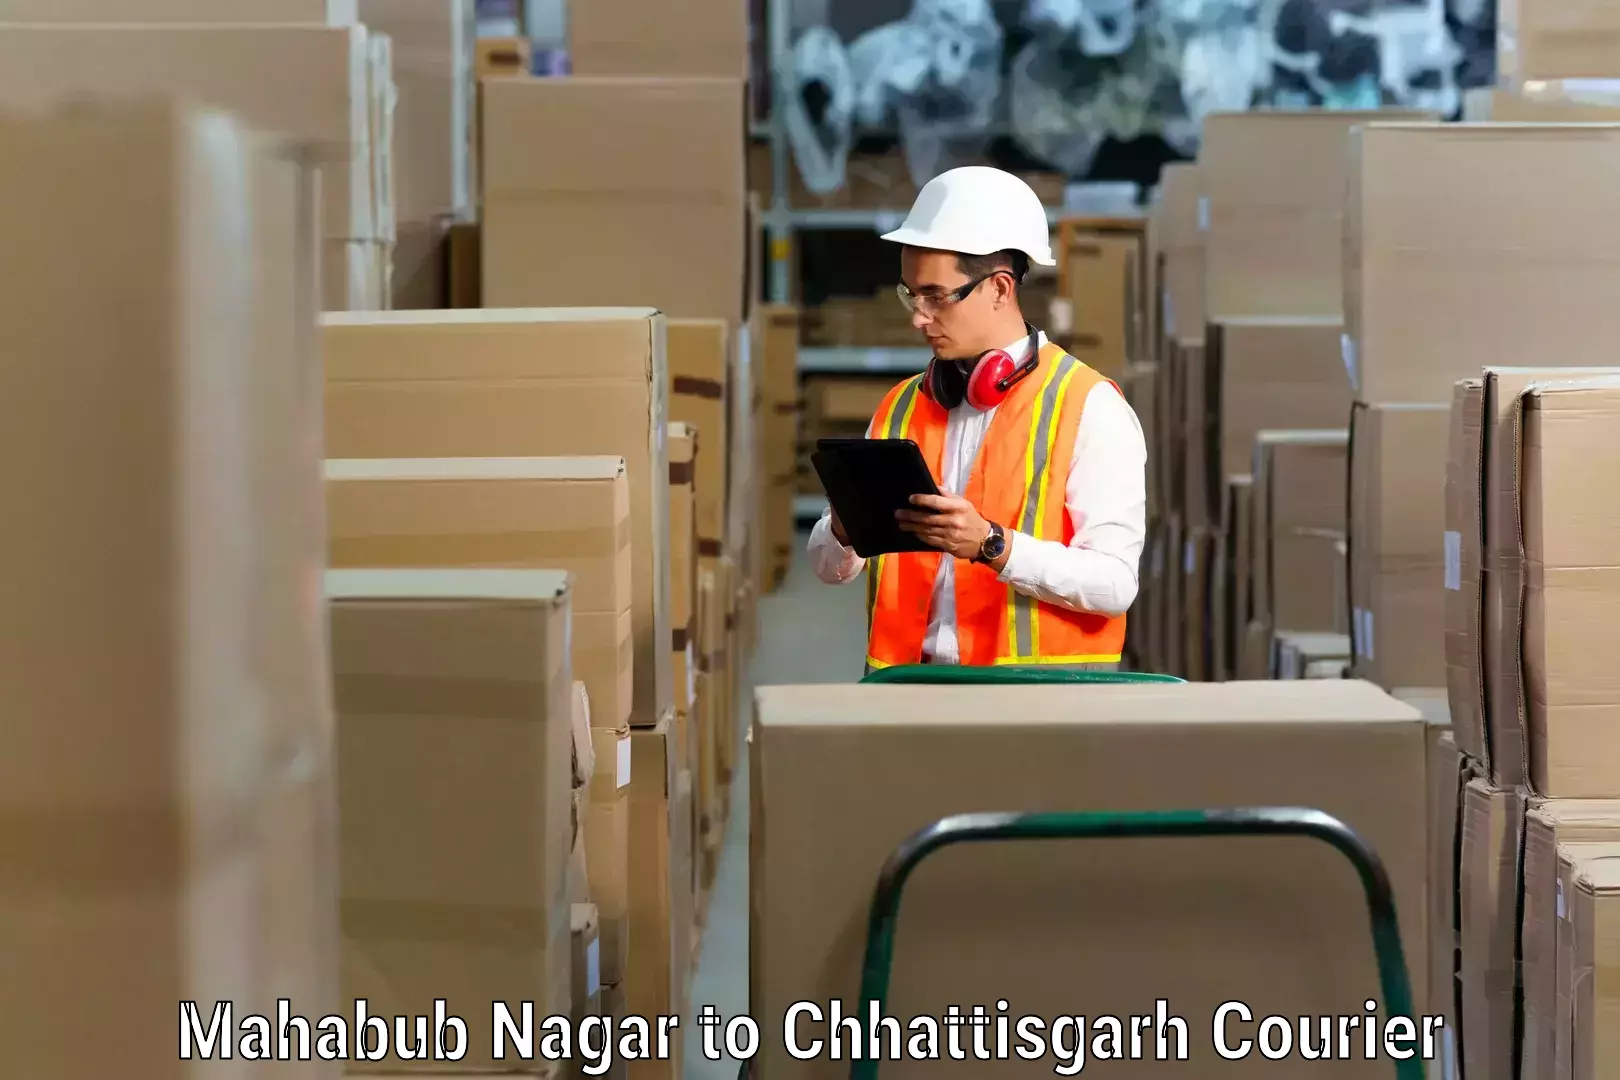 Furniture transport experts Mahabub Nagar to Jashpur